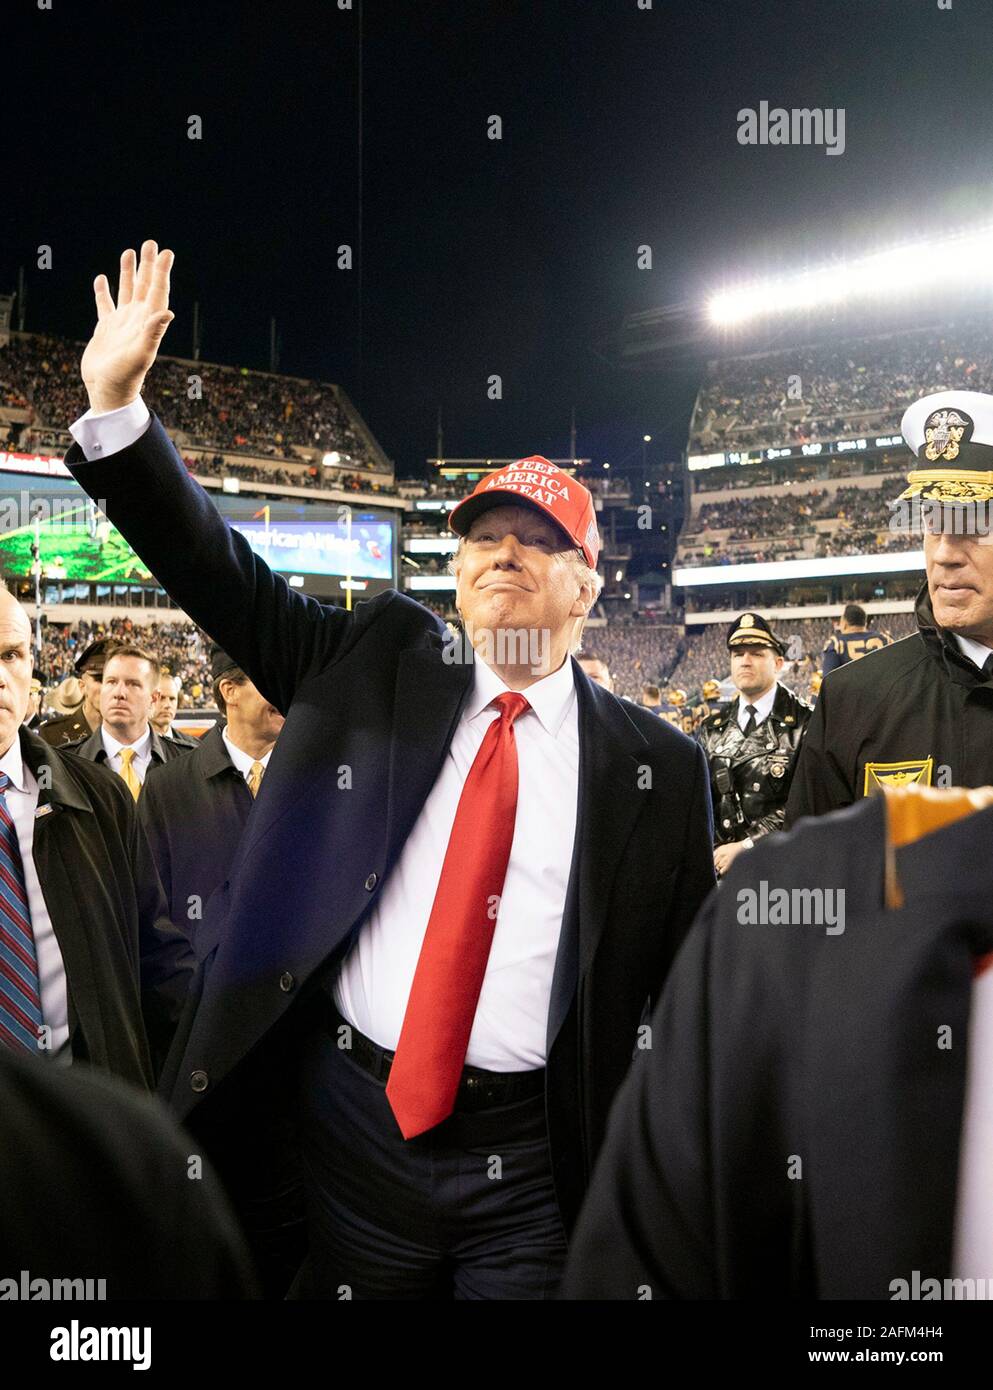 El Presidente de Estados Unidos, Donald ondas a la multitud mientras se despedía de la 120th Army-Navy juego de fútbol en el Lincoln Financial Field el 14 de diciembre de 2019 en Filadelfia, Pensilvania. Marina reclama el título superando 31-7 del Ejército. Foto de stock